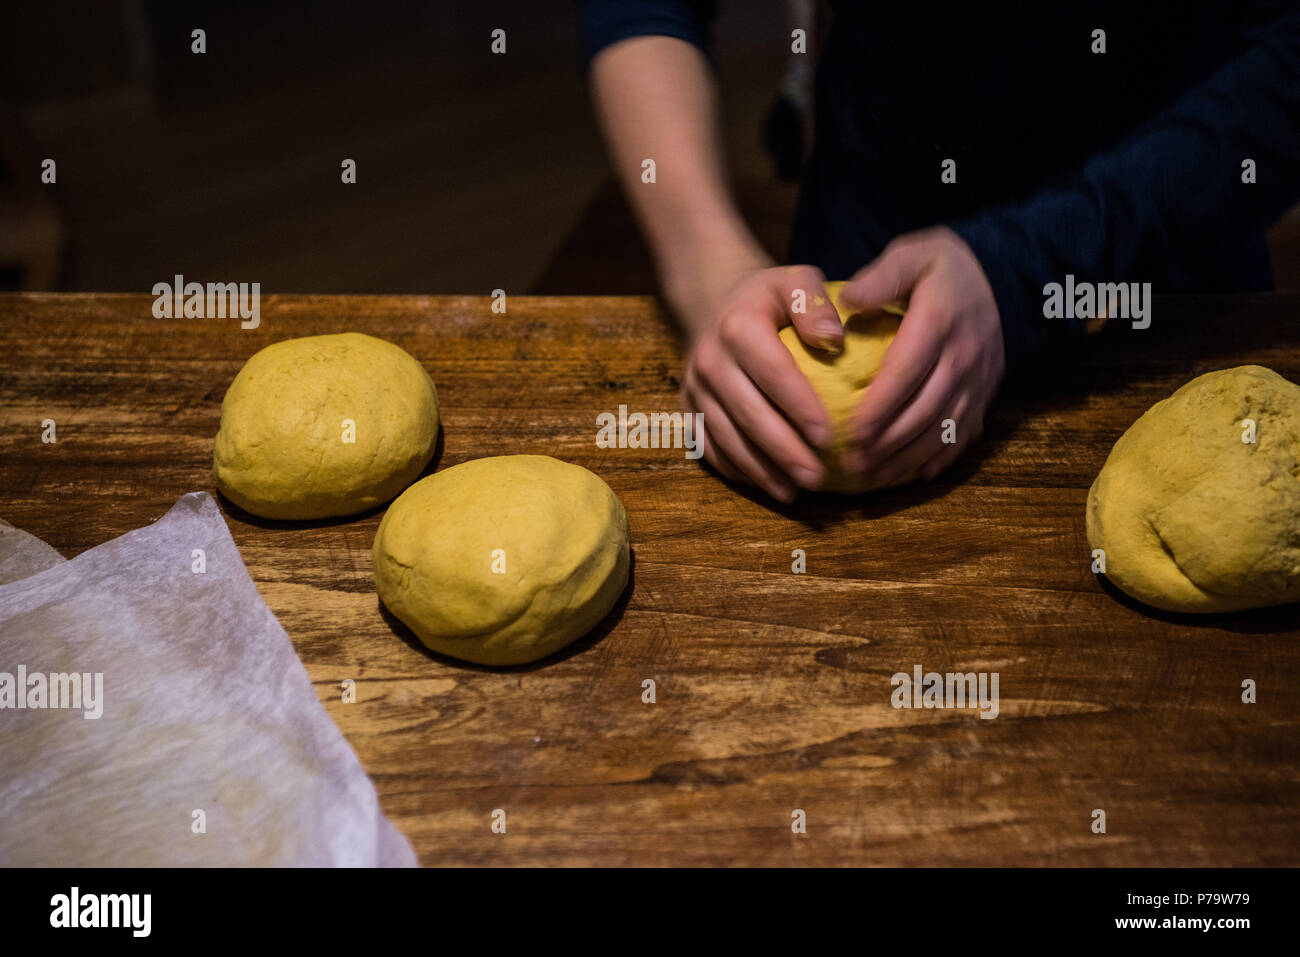 Piémont, Italie du Nord Ouest : réalisation de natural le pain fait avec la levure mère au foyer par les habitants d'un ecovillage Banque D'Images